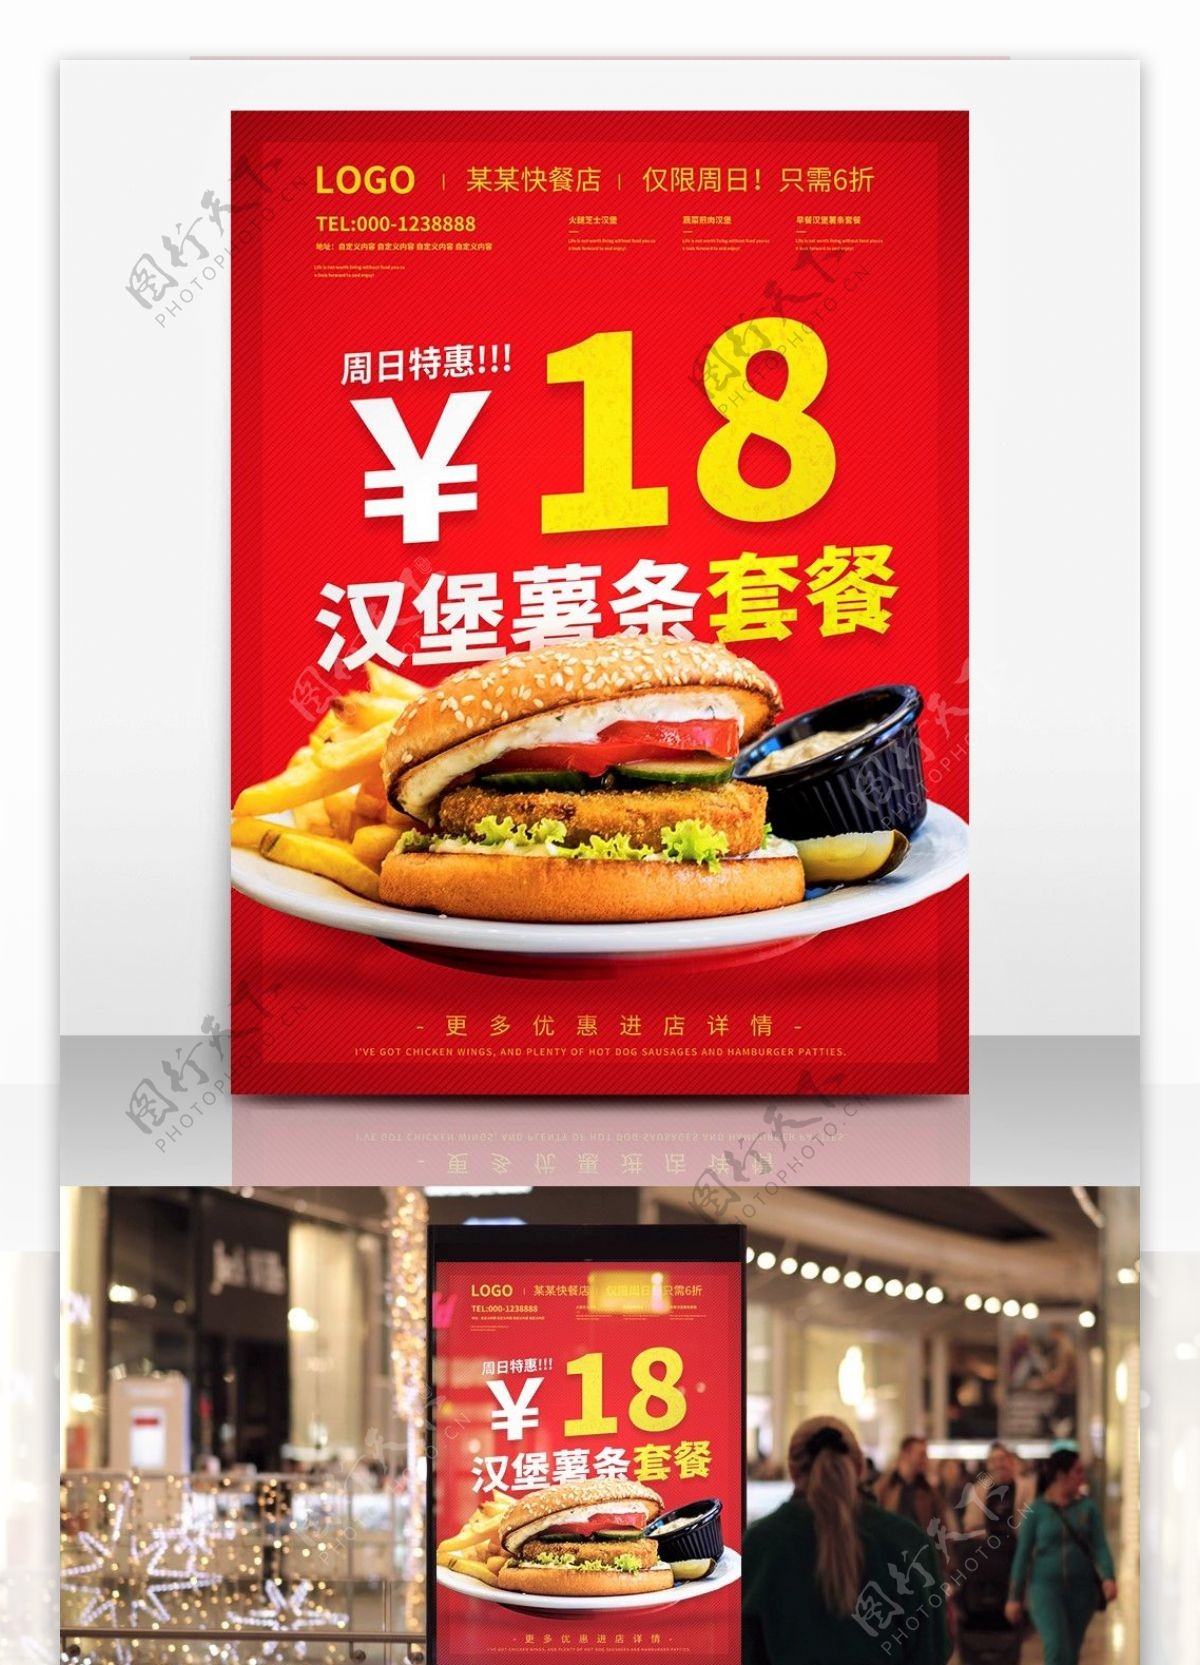 创意红色促销海报设计红色美味可口汉堡薯条套餐促销海报